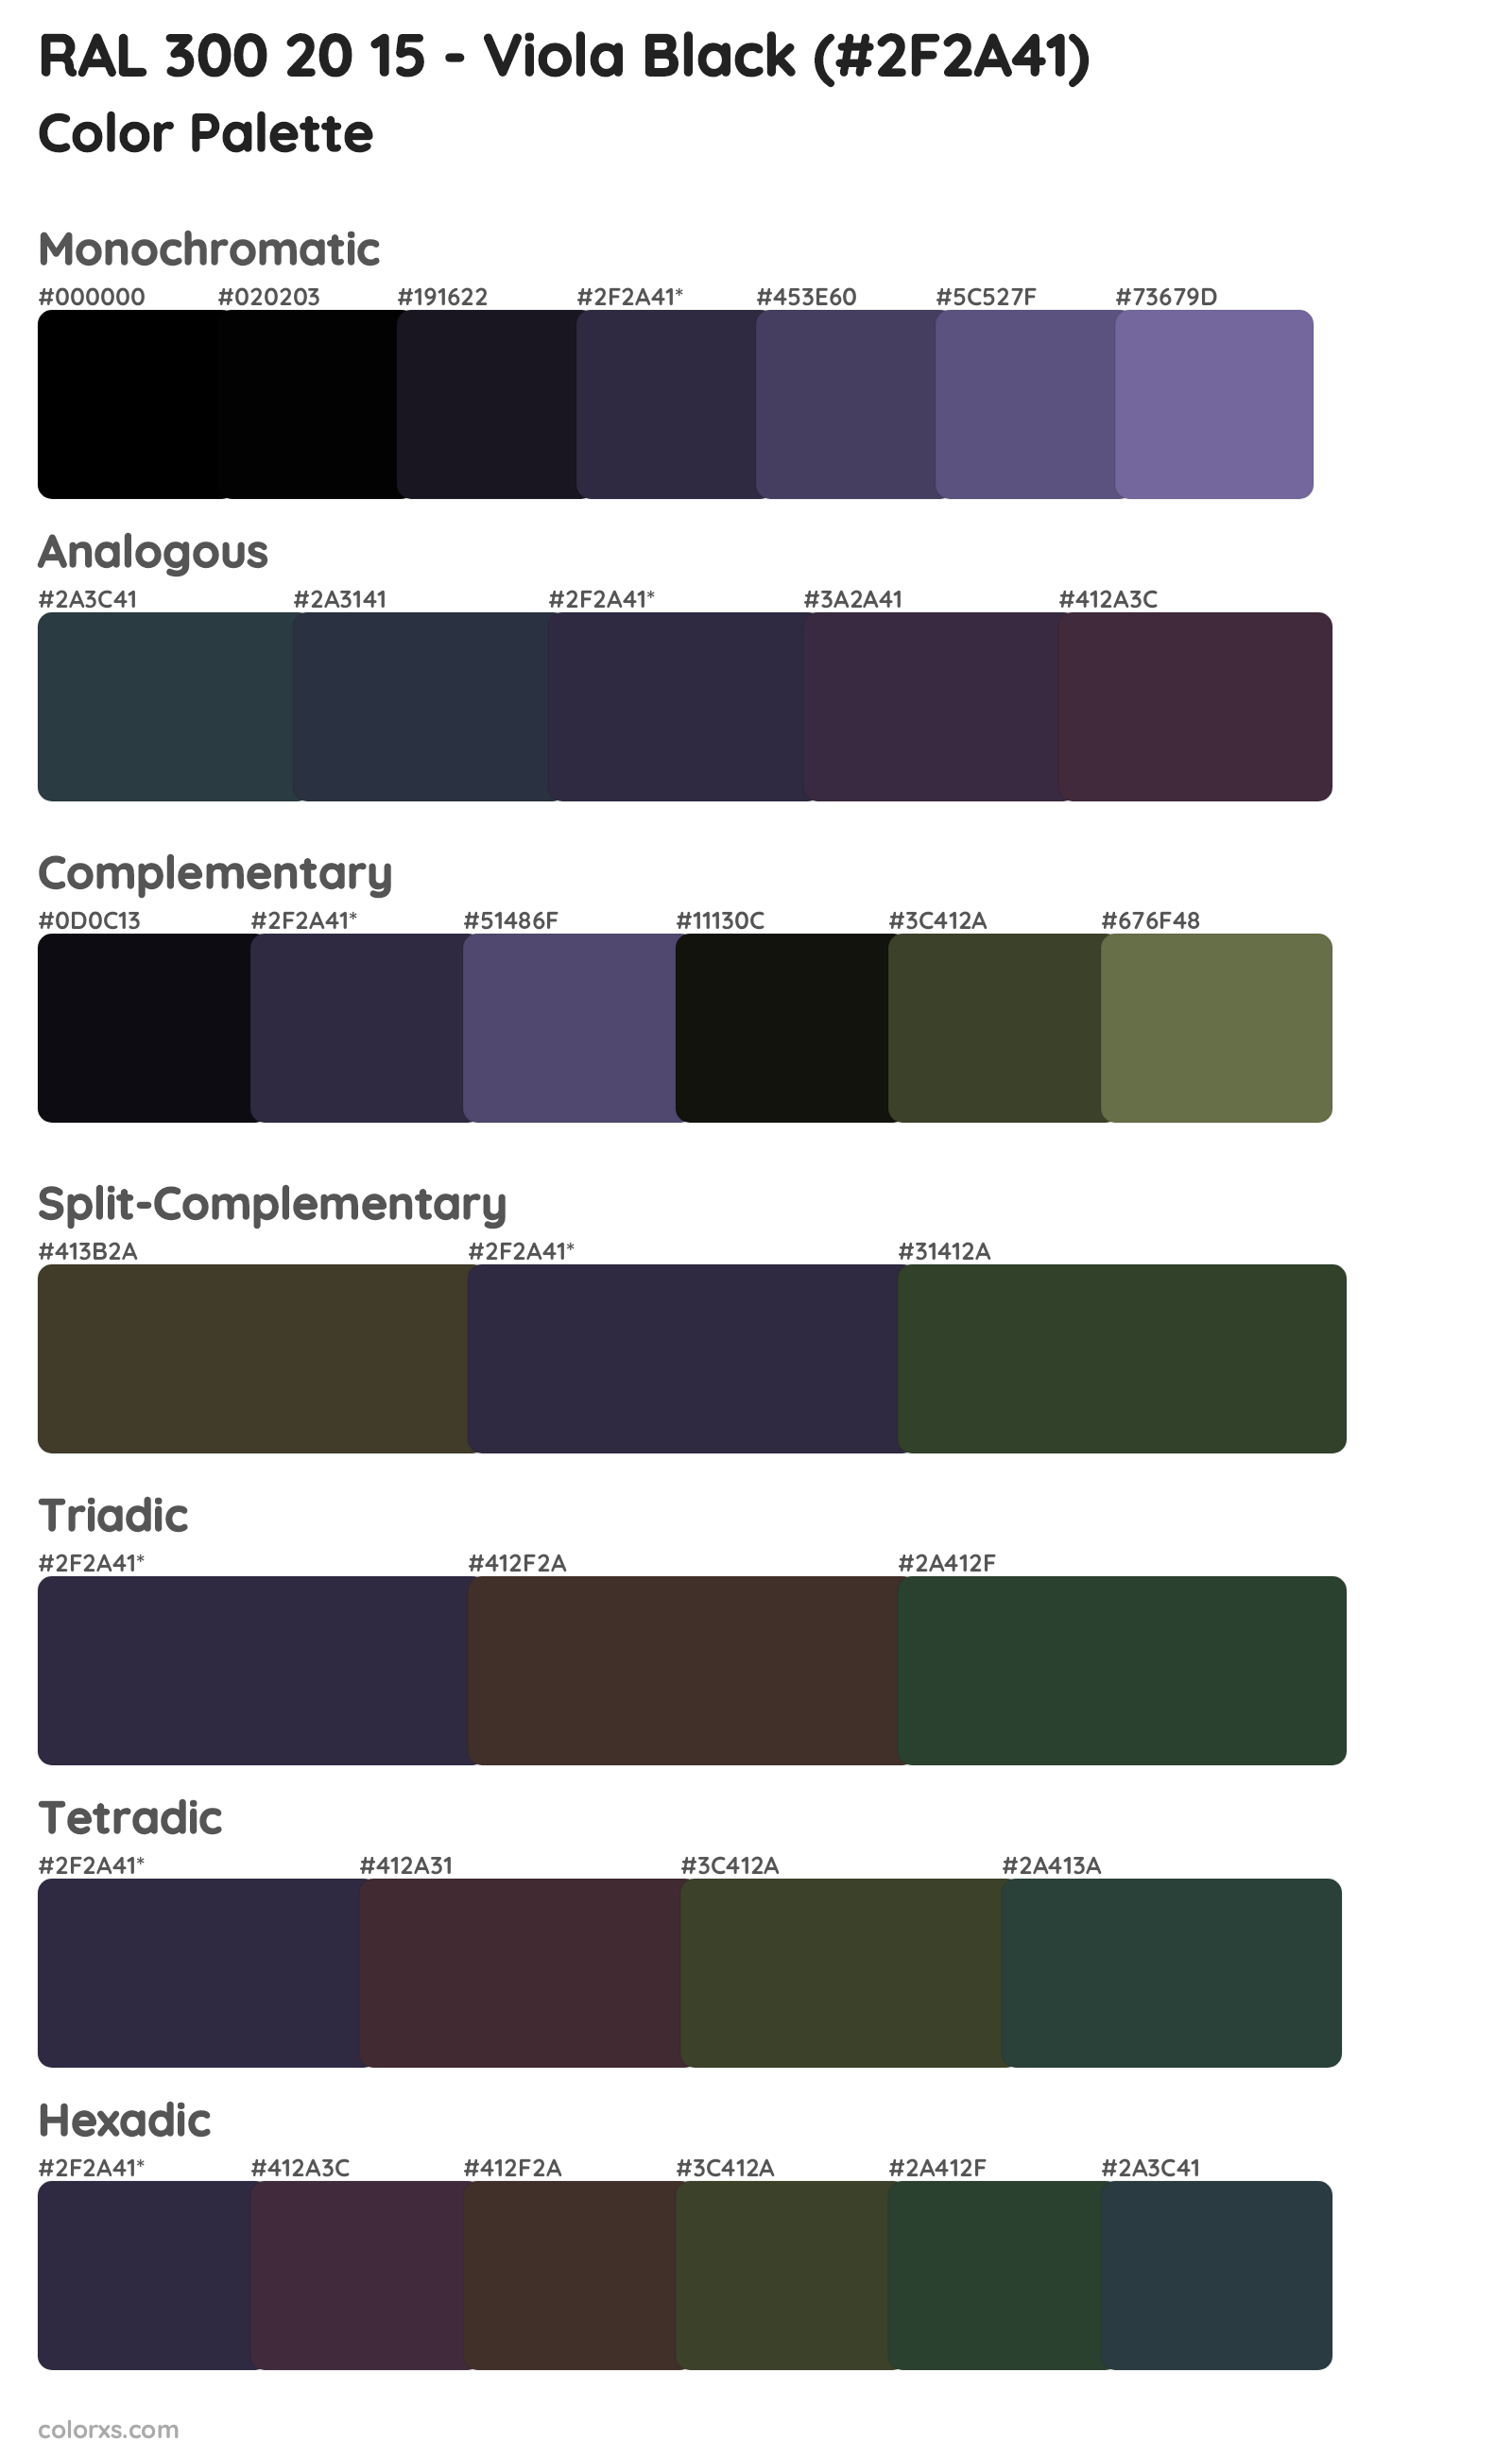 RAL 300 20 15 - Viola Black Color Scheme Palettes